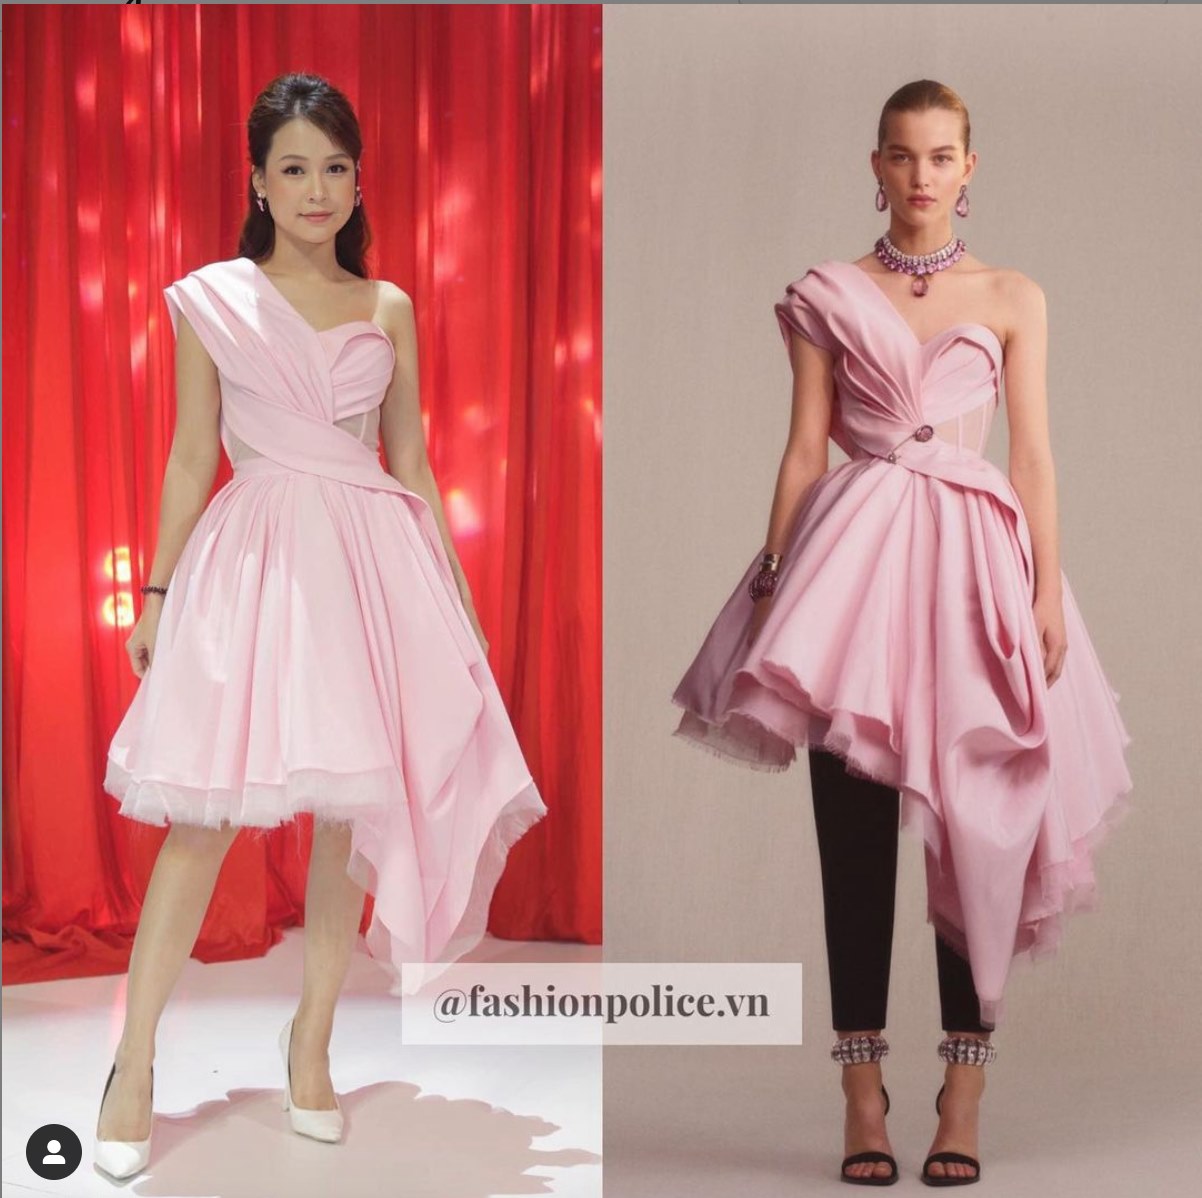 Chiếc váy hồng của Sam so với bản gốc thuộc về nhà mốt Alexander McQueen trông èo uột và kém thu hút. Từ đường may đến màu sắc đều không gây được ấn tượng. Ảnh: @fashionpolice.vn